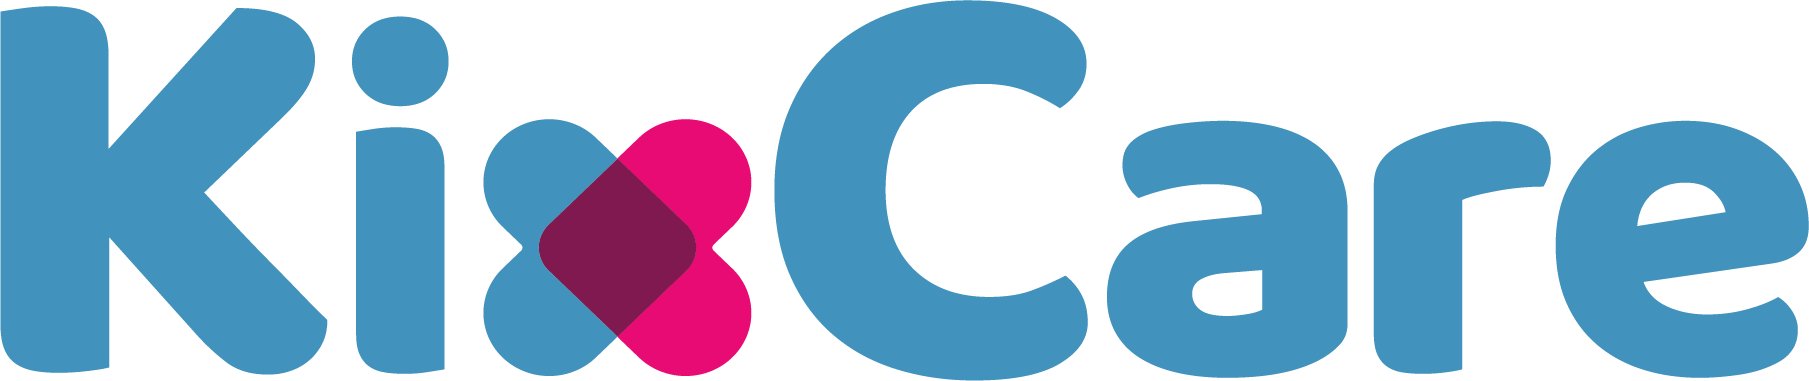 KixCare-logo-1